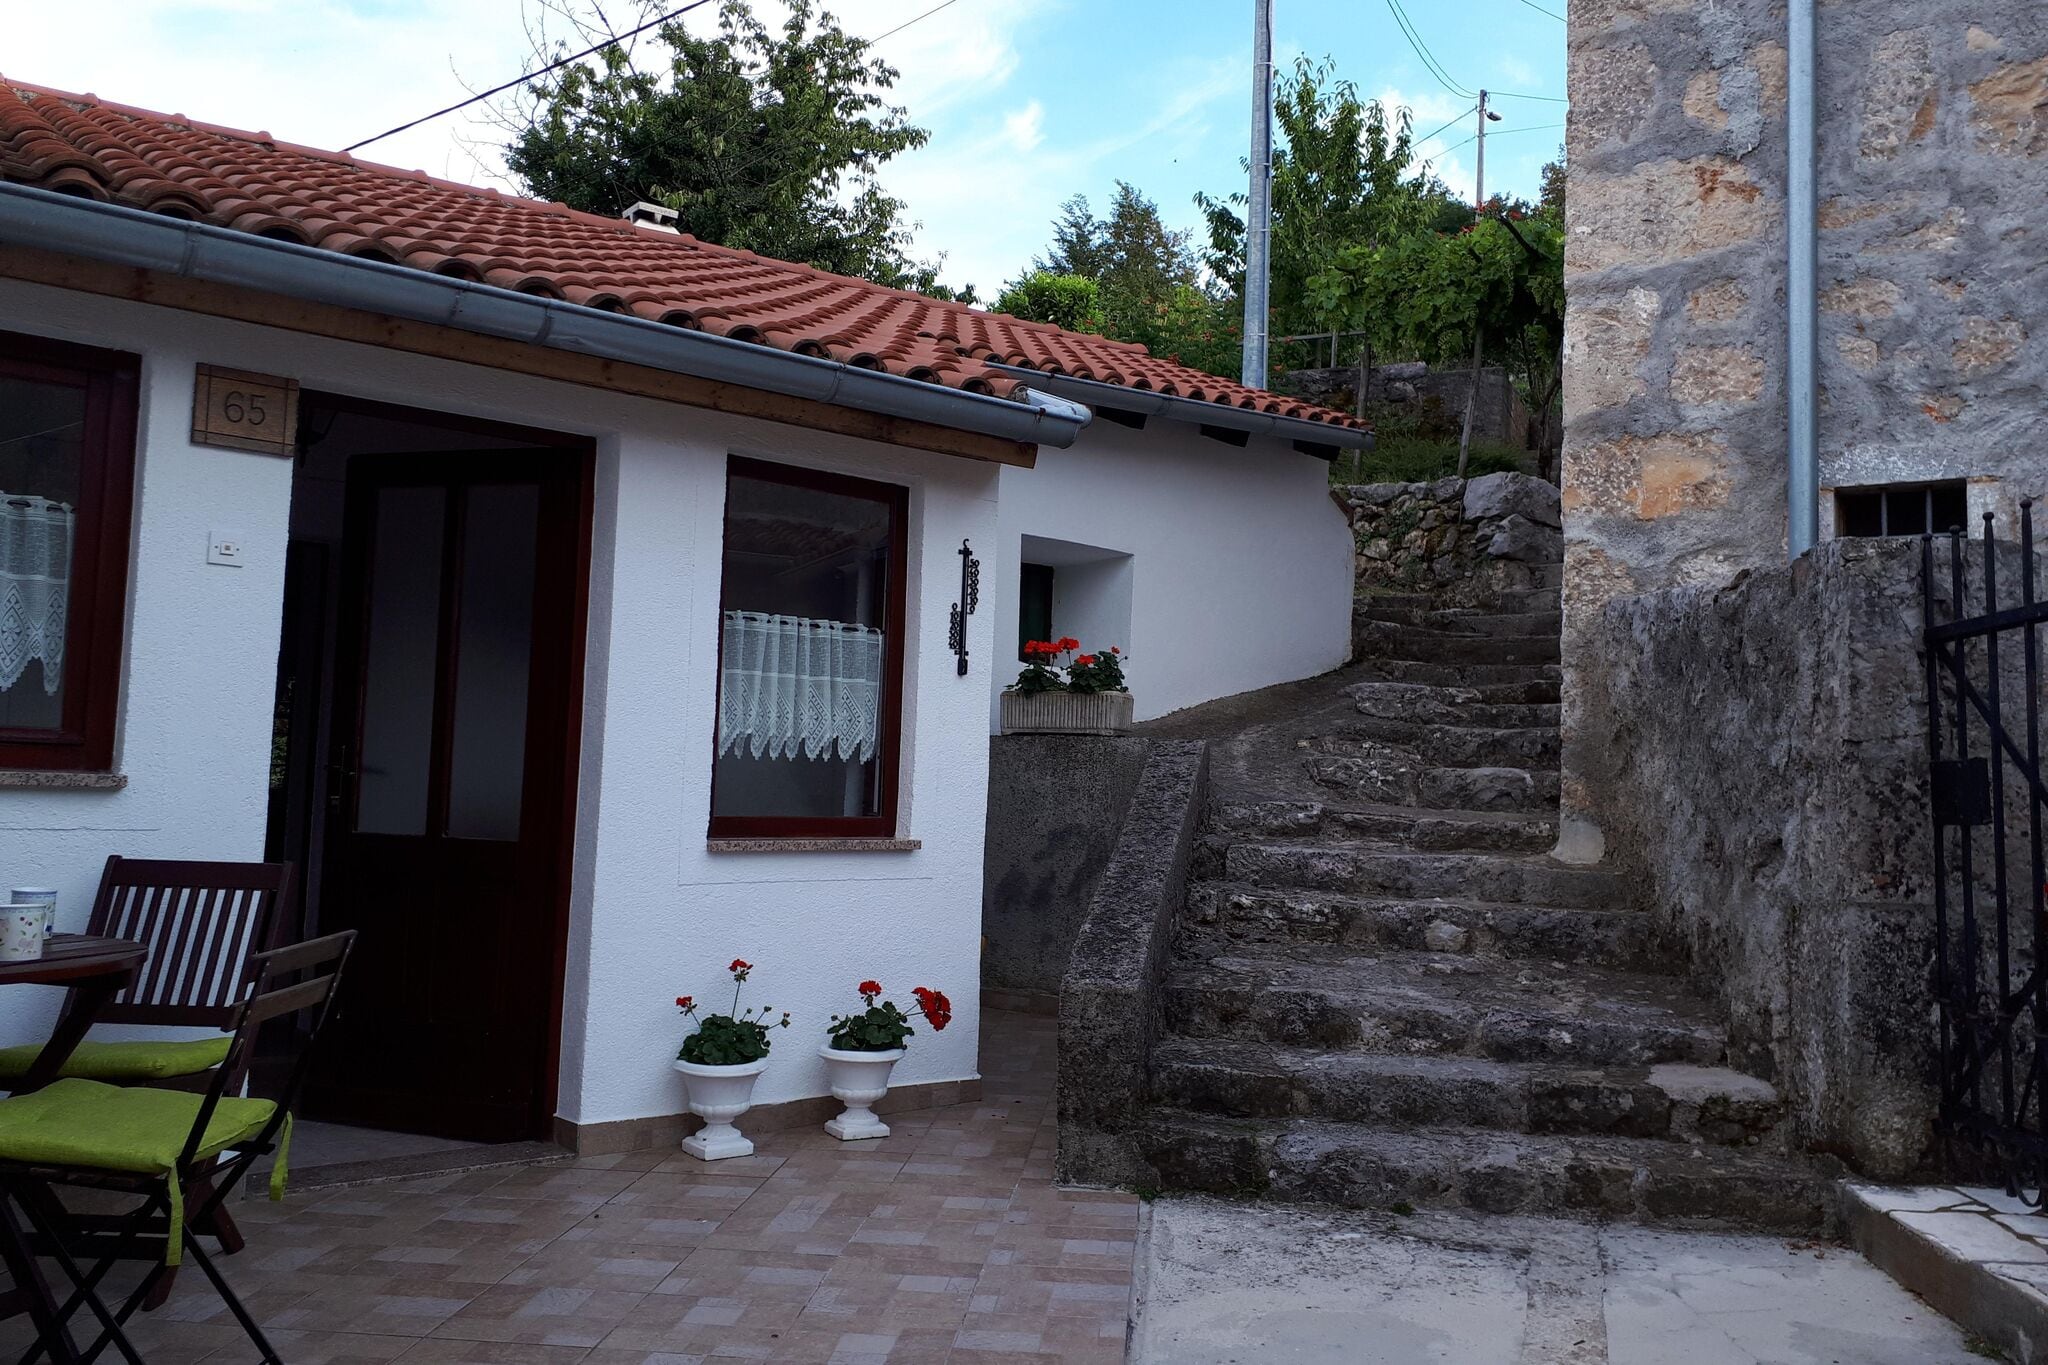 Ferienhaus Milica in Lovran - Dobrec, in Panoramalage mit Jacuzzi